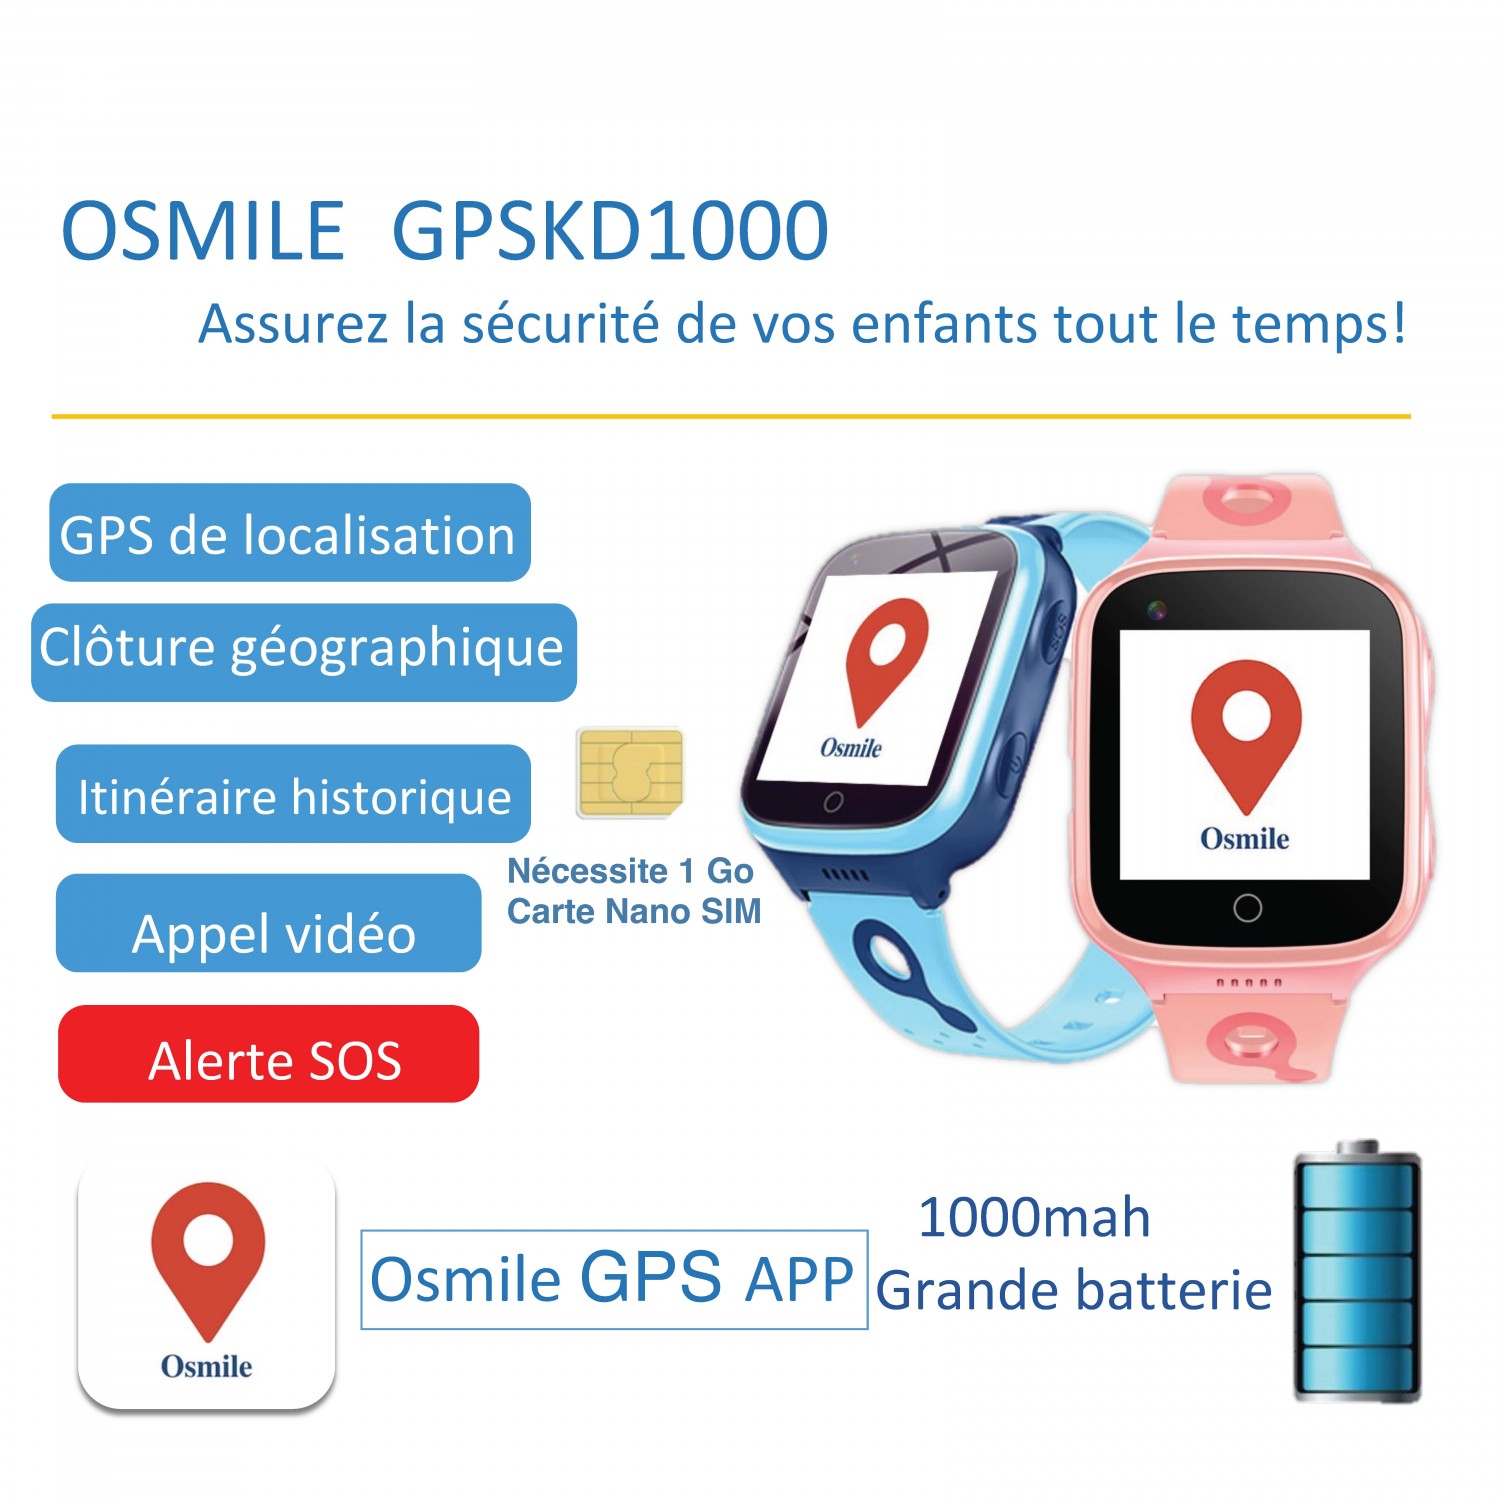 Osmile GPSKD1000 Enfants Solution de gestion GPS pour les parents et les organisations d'enfants